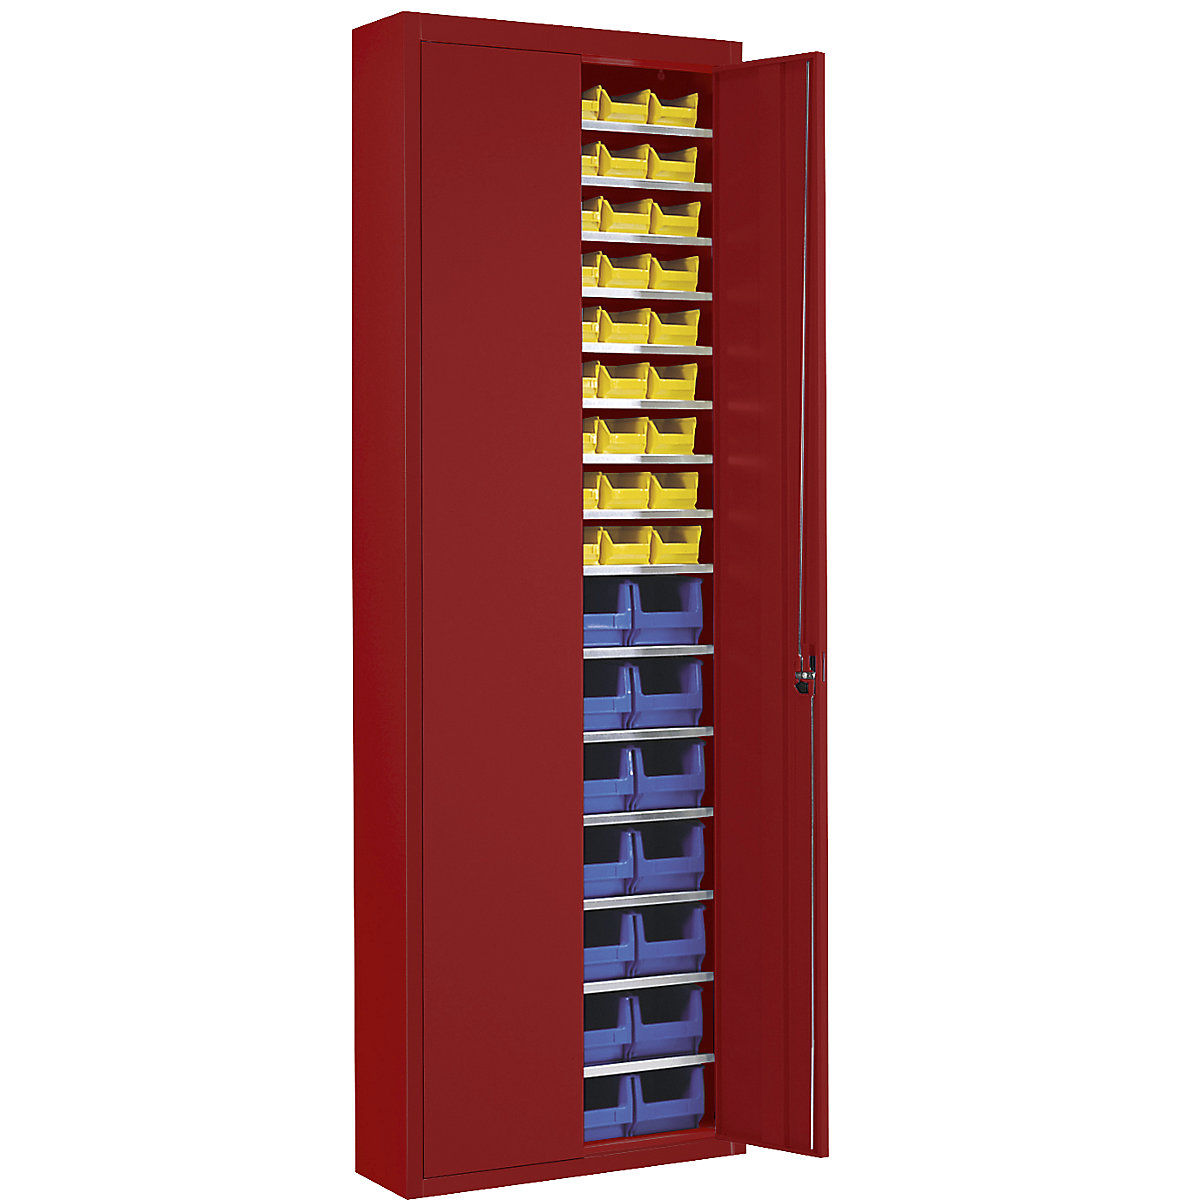 Skladová skříň s přepravkami s viditelným obsahem – mauser, v x š x h 2150 x 680 x 280 mm, jednobarevné, červená, 82 přepravek-4